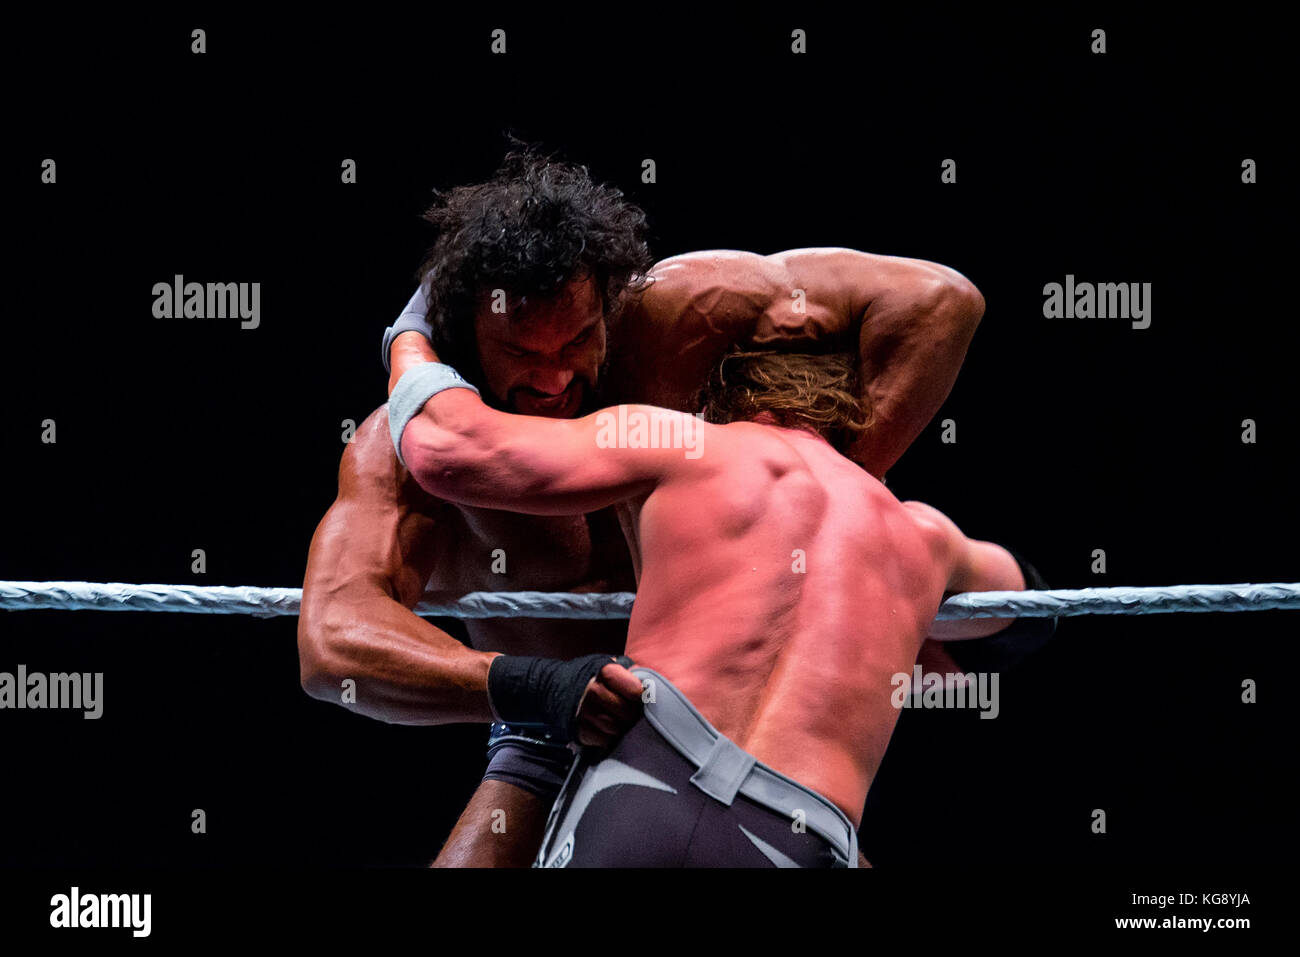 Barcellona - Nov 4: i lottatori AJ Styles e Jinder Mahal in azione a WWE dal vivo presso il Palau Sant Jordi il 4 novembre 2017 a Barcellona, Spagna. Foto Stock